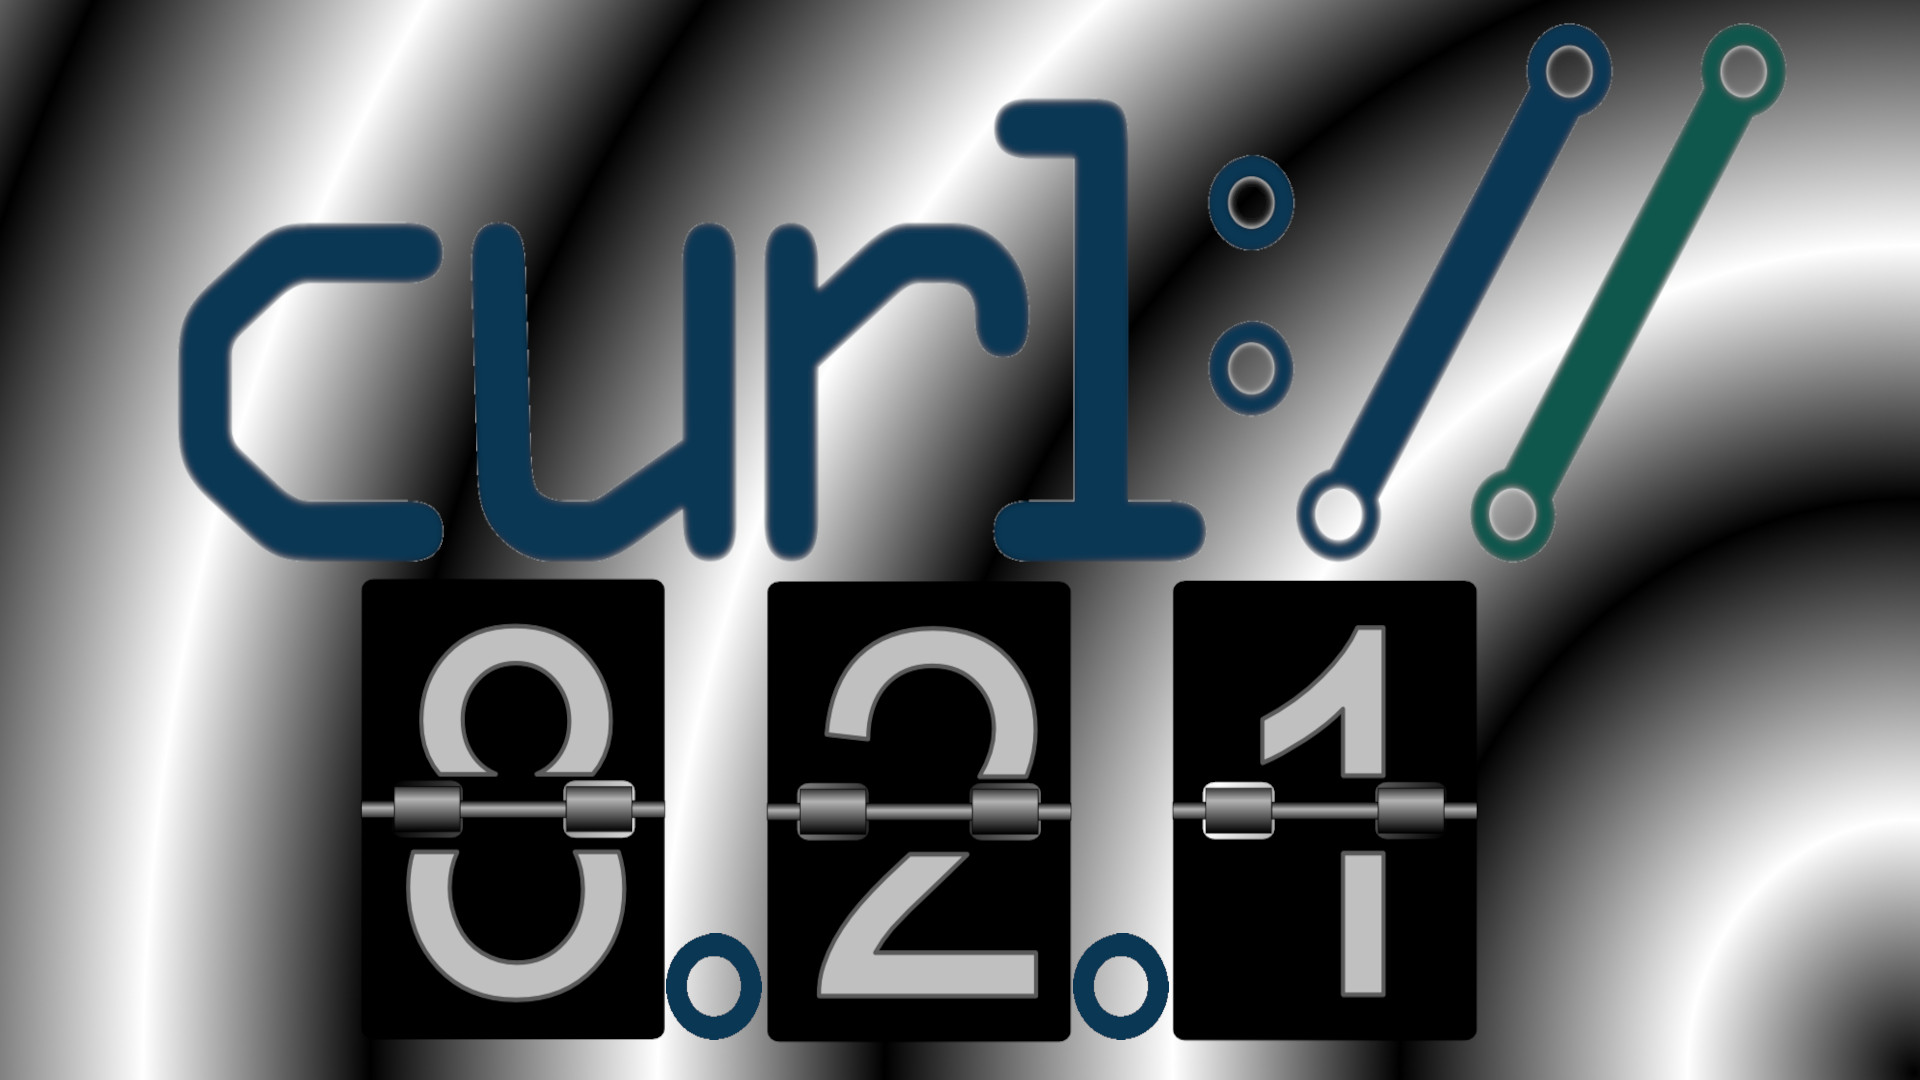 curl 8.2.1